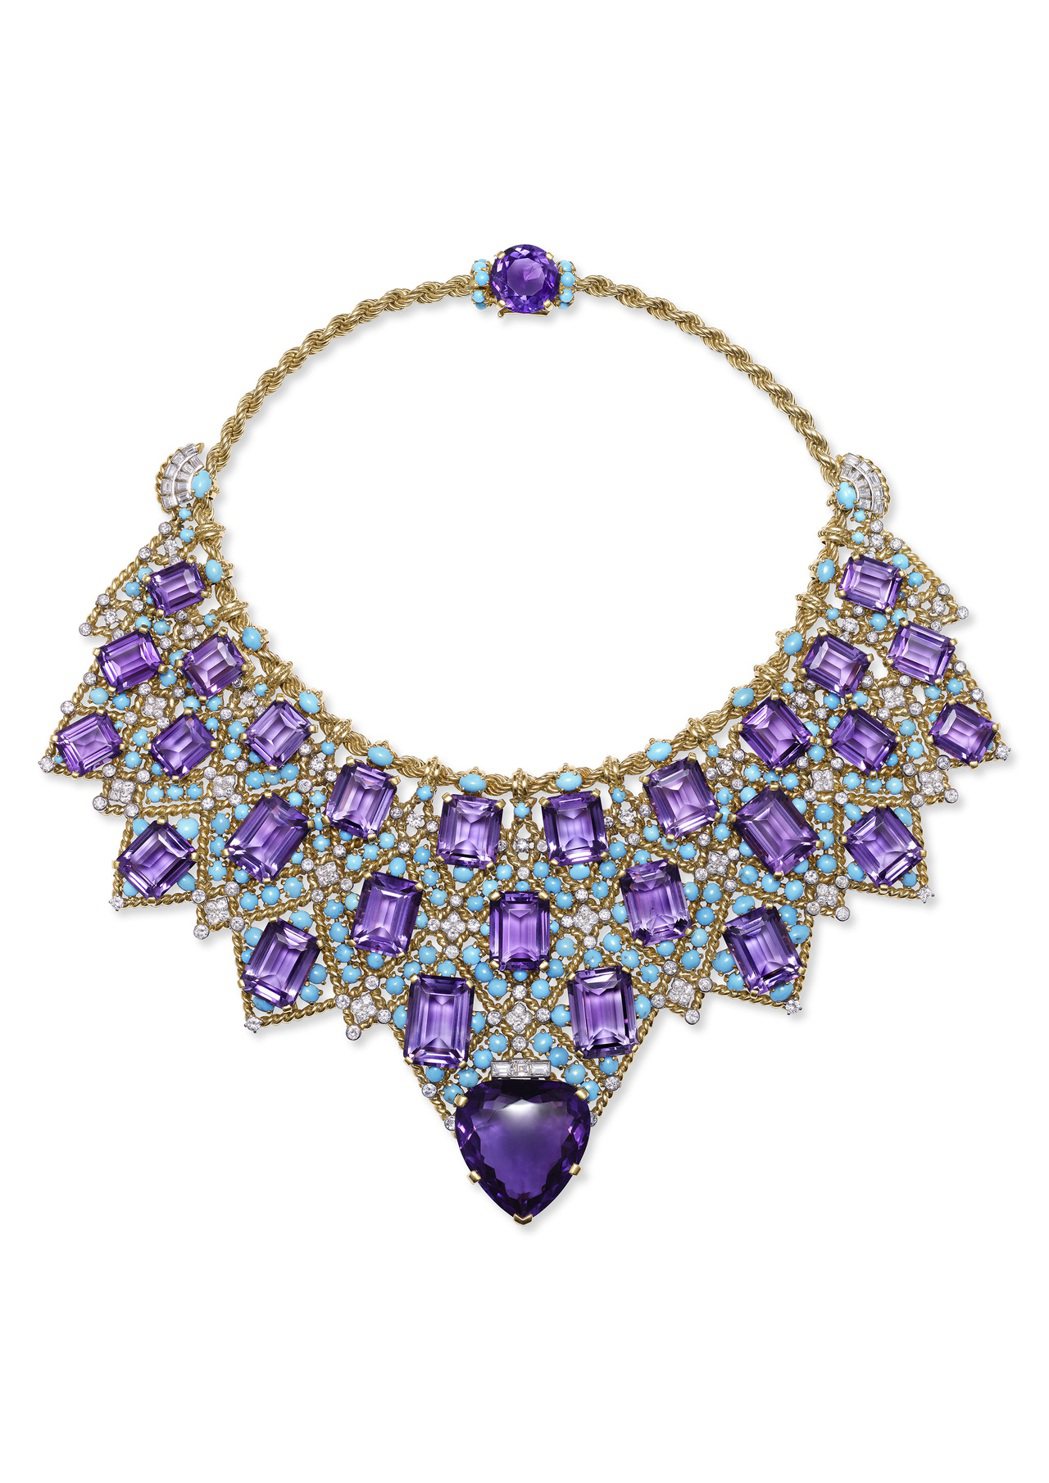 展品之一為1947年由溫莎公爵委託卡地亞巴黎製作的紫水晶項鍊，黃金與鉑金鑲嵌鑽石...